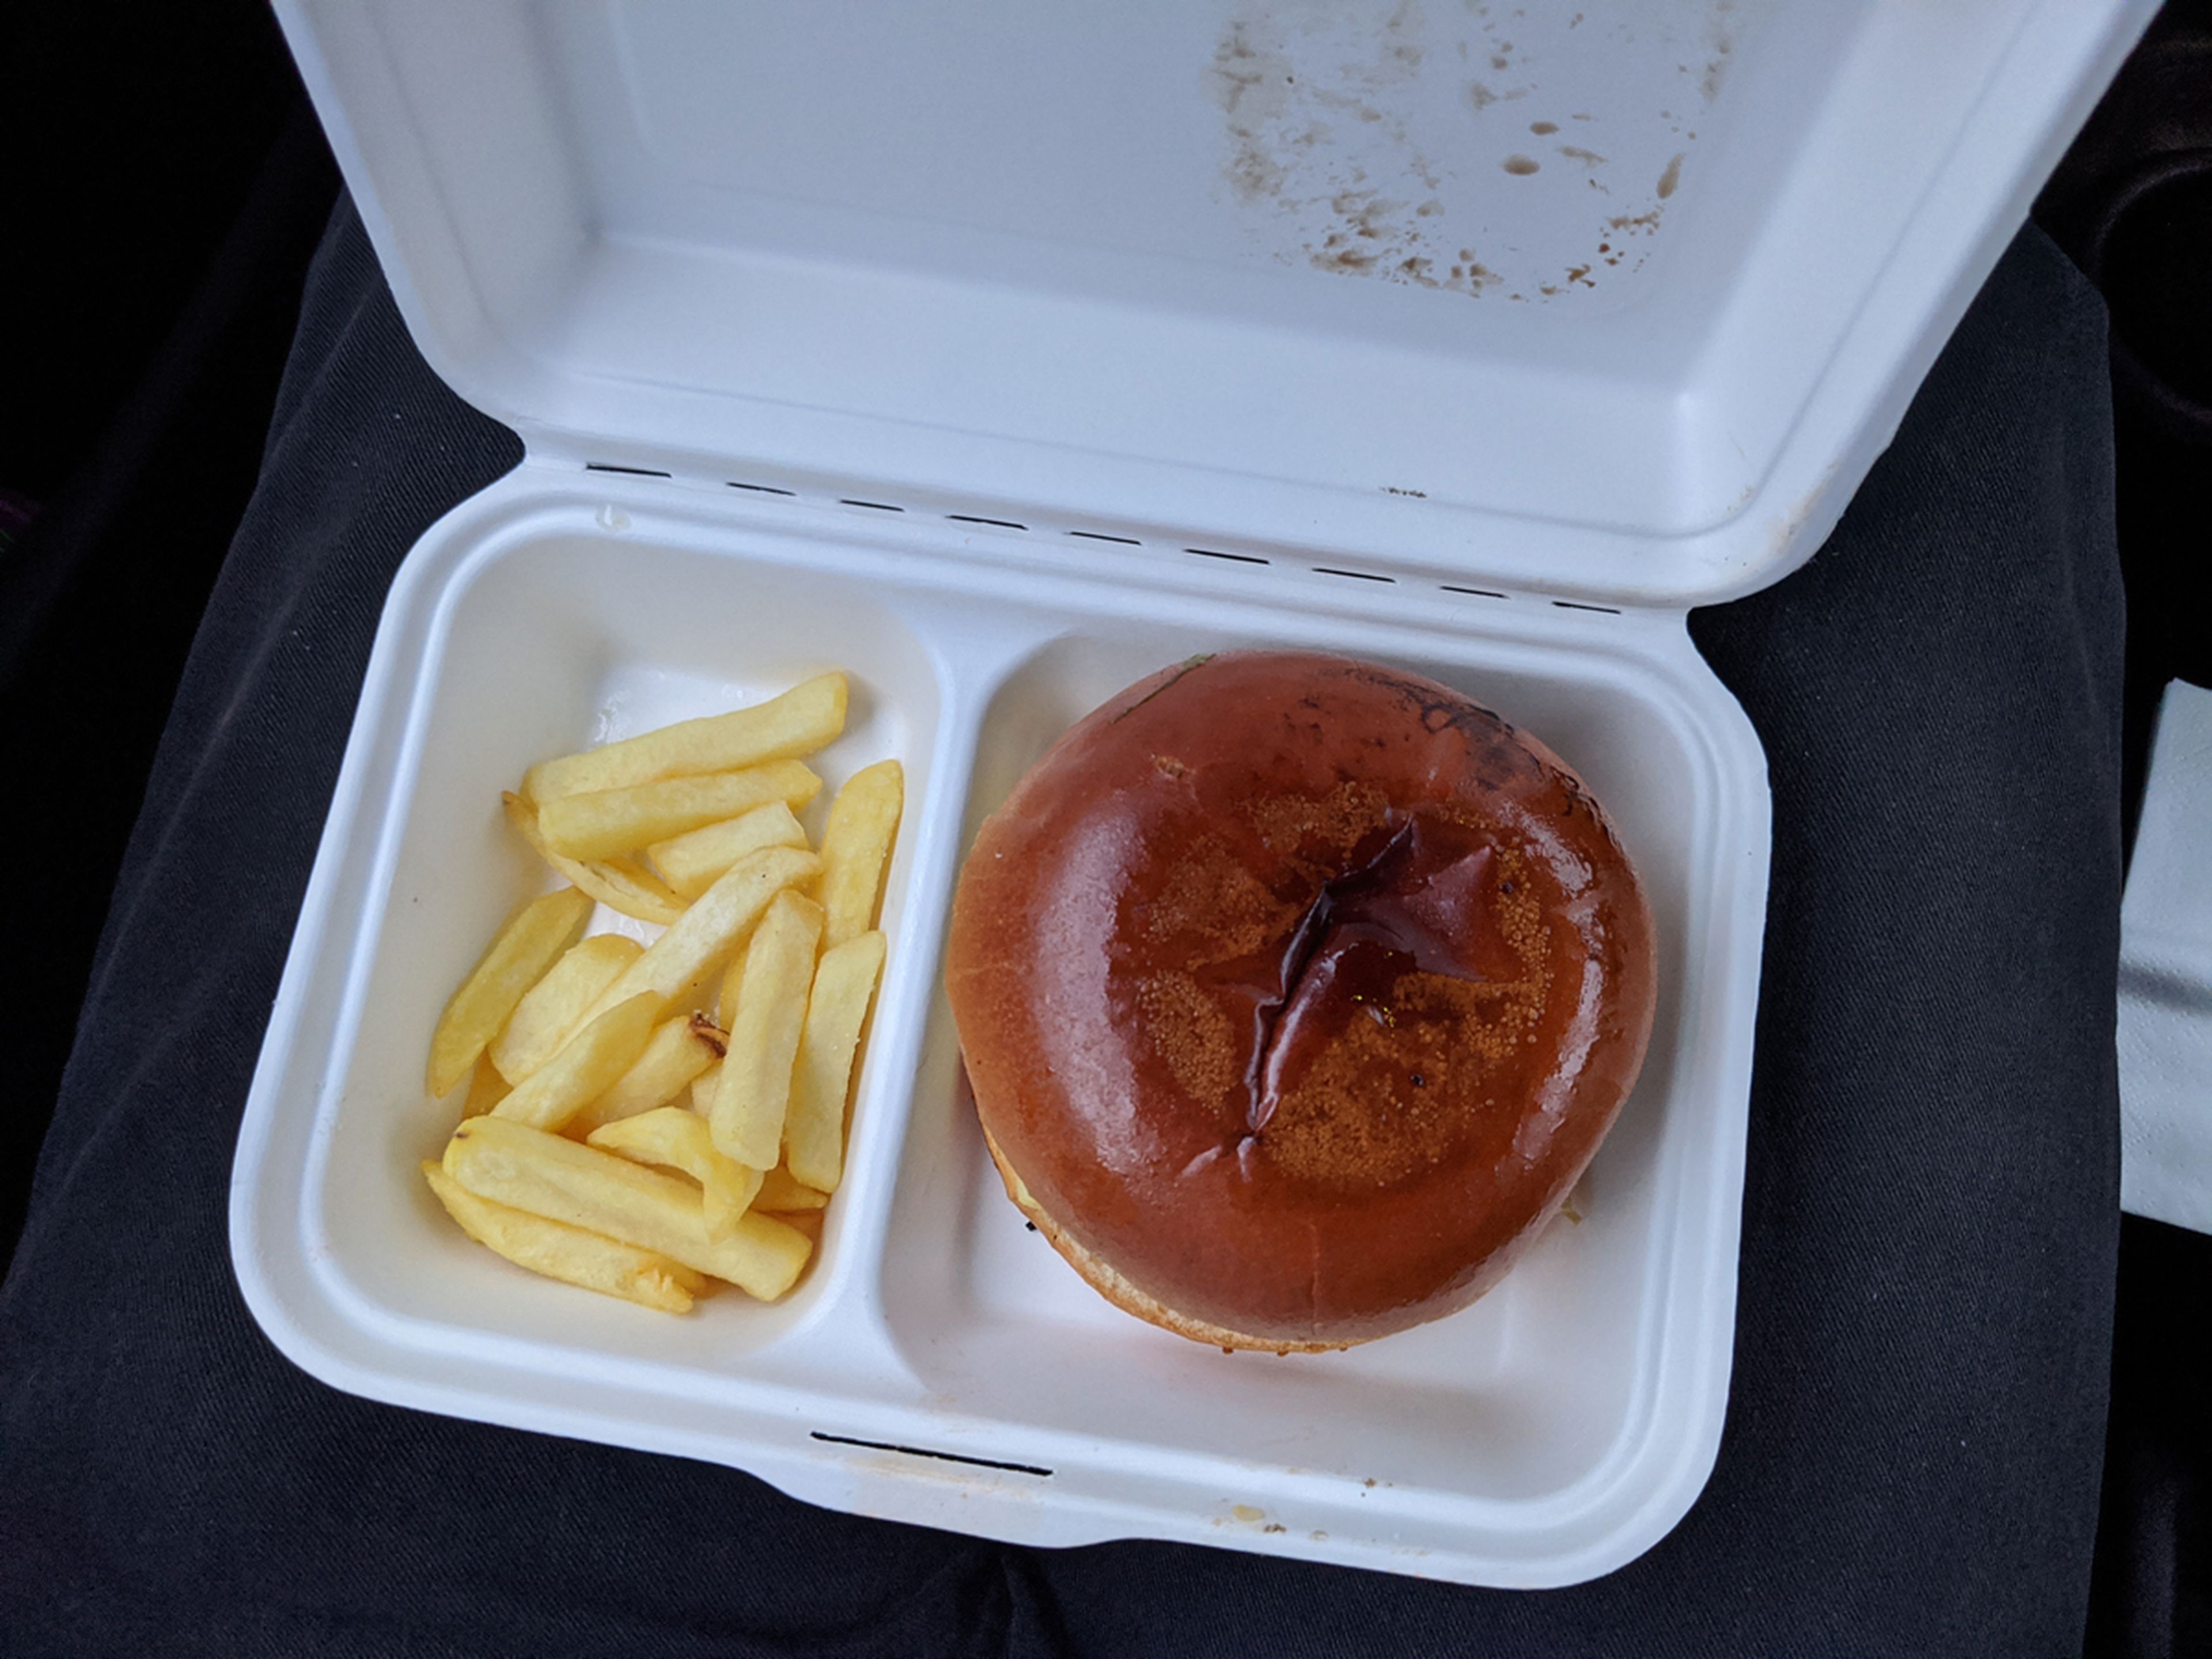 El menú estaba formado de una hamburguesa, patatas fritas y refresco. 14 euros.